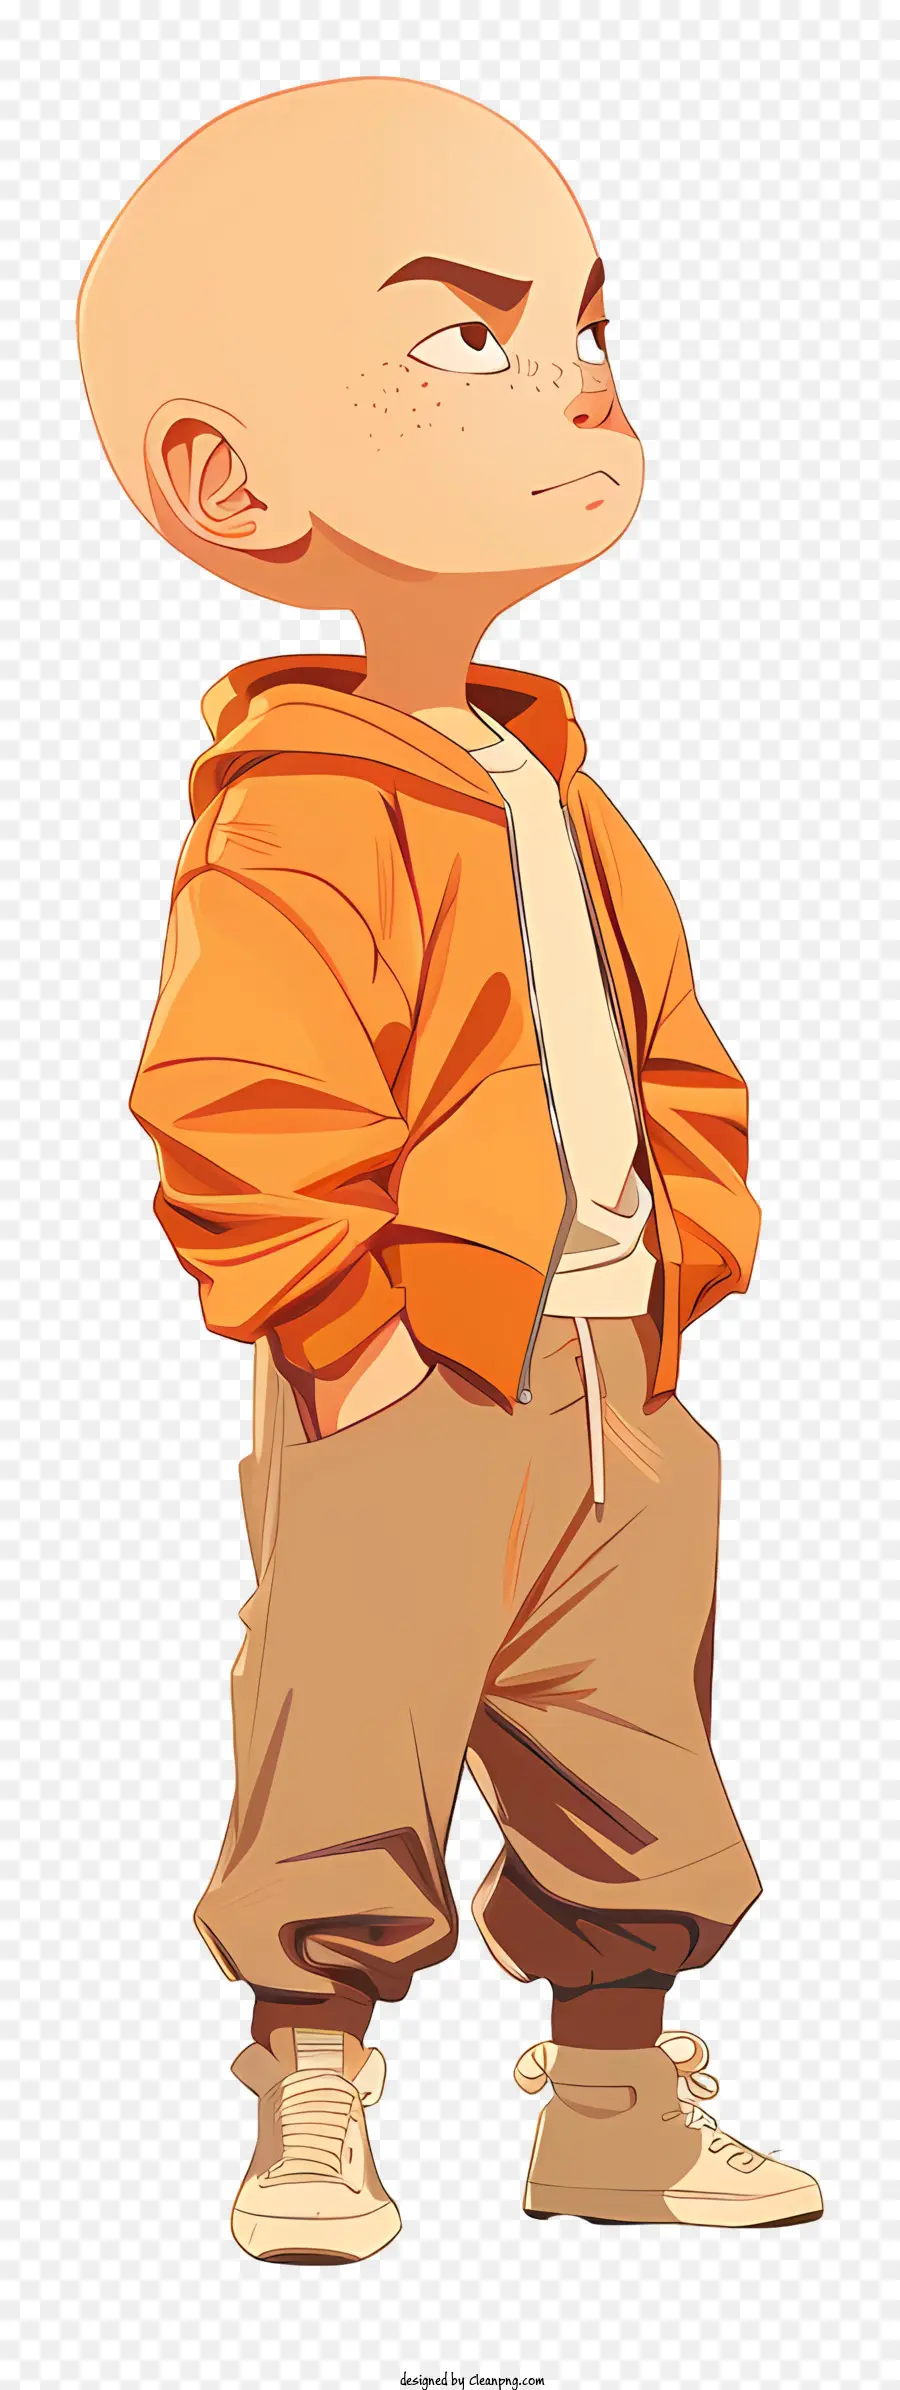 Krillin hói người đàn ông màu cam áo nâu thể hiện nghiêm túc - Người đàn ông hói trong áo khoác màu cam, biểu hiện nghiêm túc